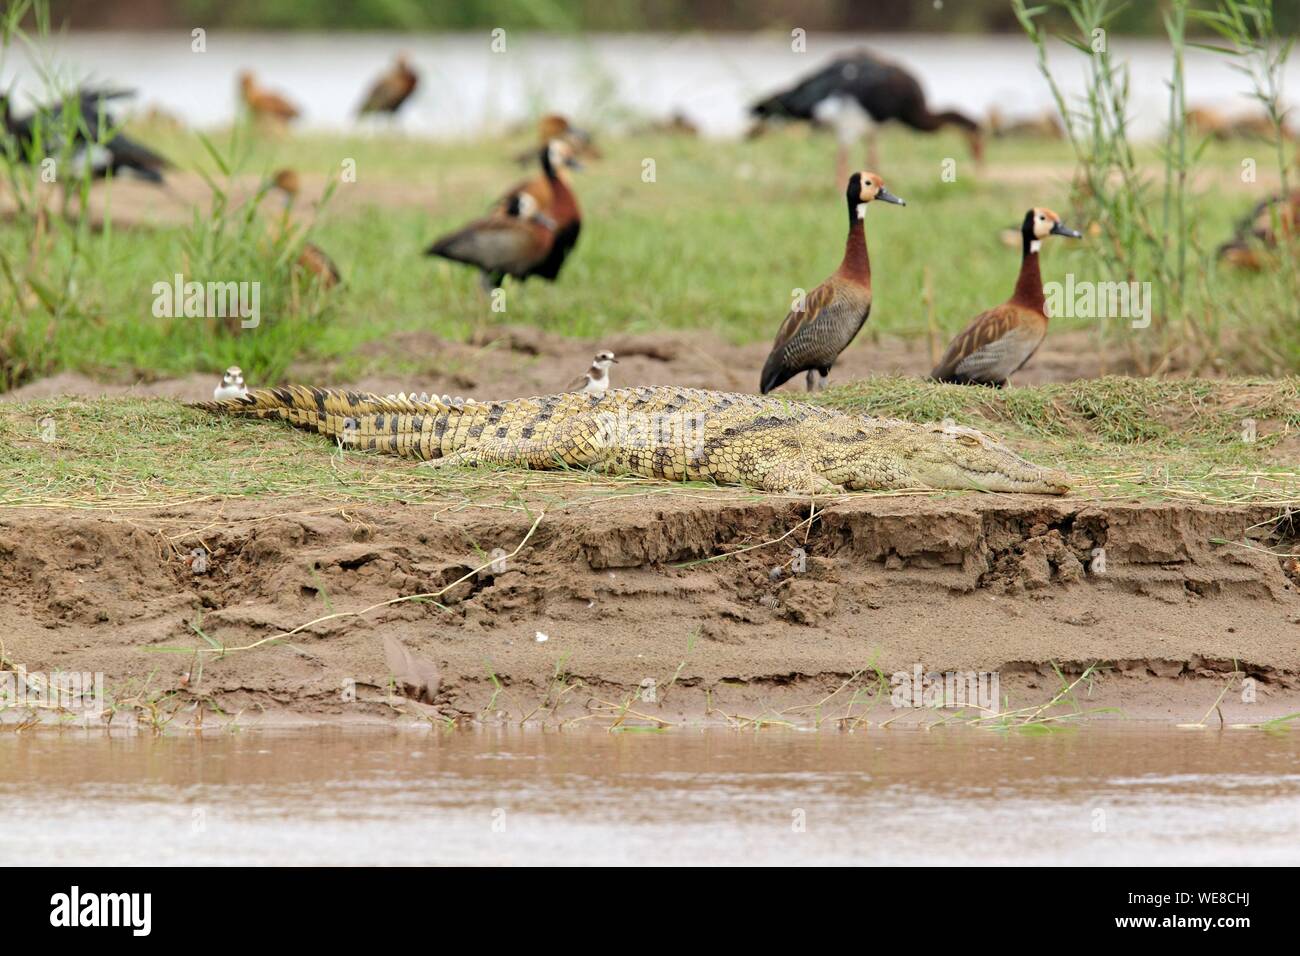 Burundi, el Parque Nacional de Rusizi, el cocodrilo del Nilo (Crocodylus niloticus), el pato de silbido de cara blanca (Dendrocygna viduata) Foto de stock